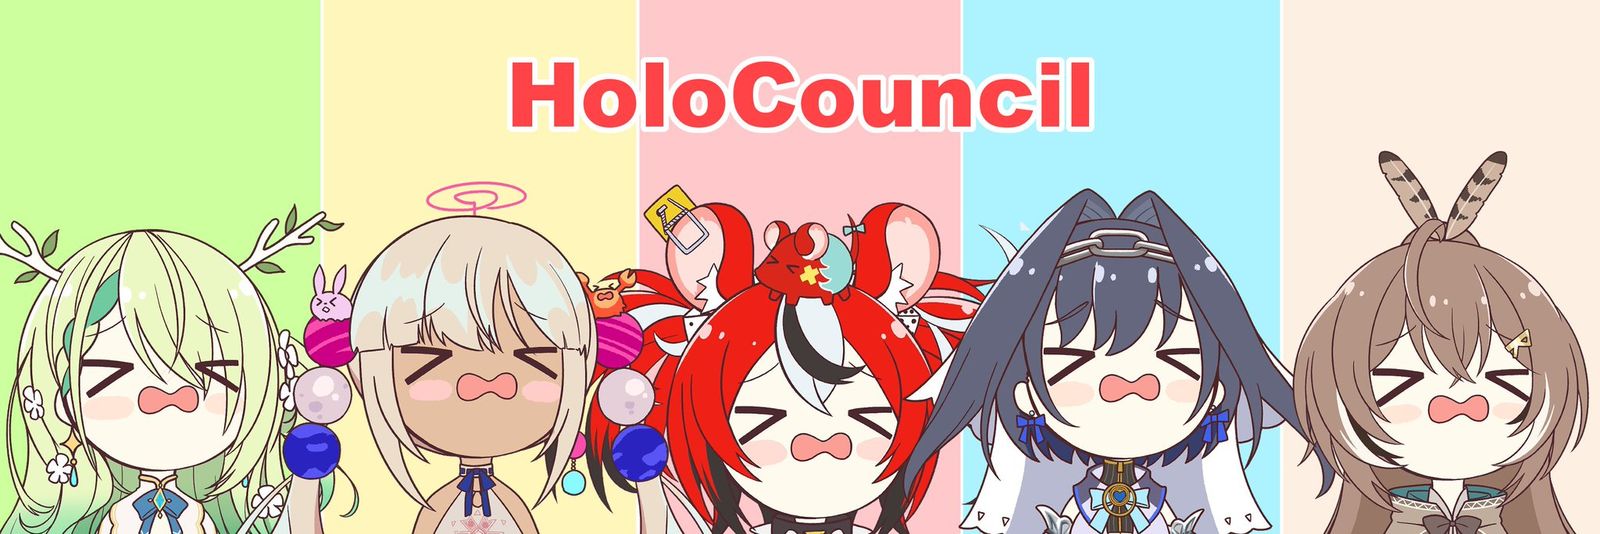 HoloCouncil